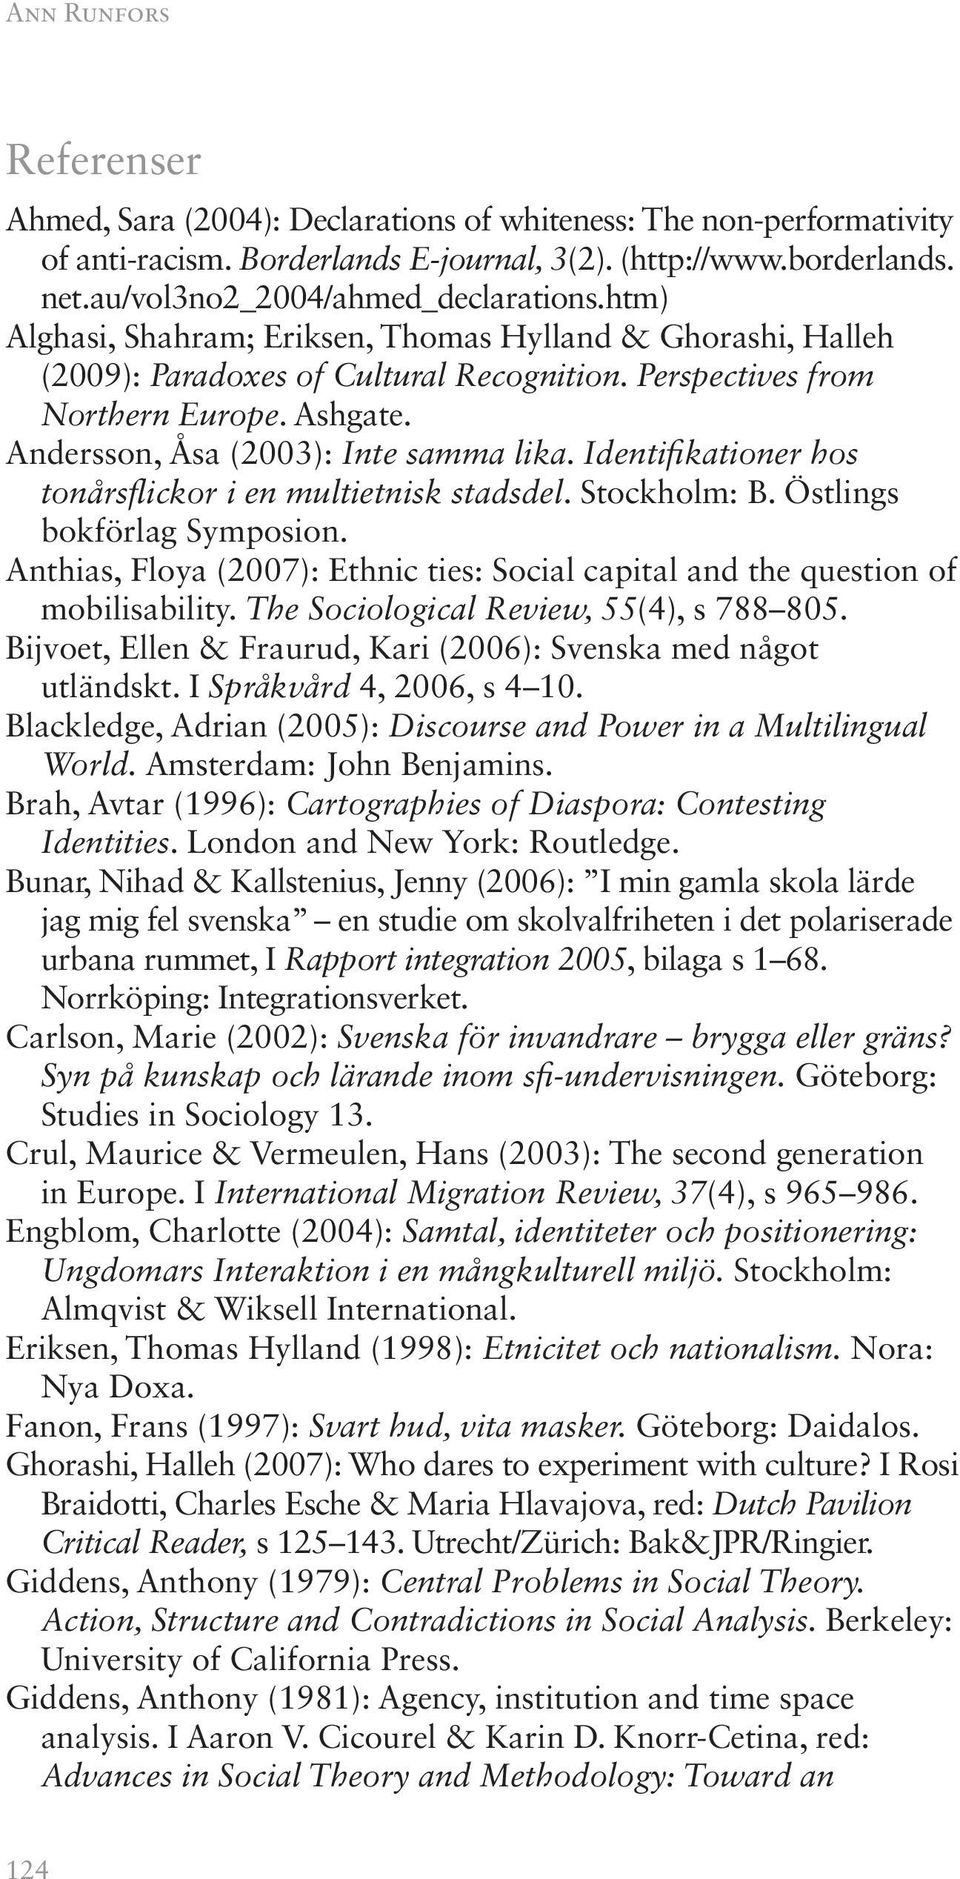 Andersson, Åsa (2003): Inte samma lika. Identifikationer hos tonårsflickor i en multietnisk stadsdel. Stockholm: B. Östlings bokförlag Symposion.